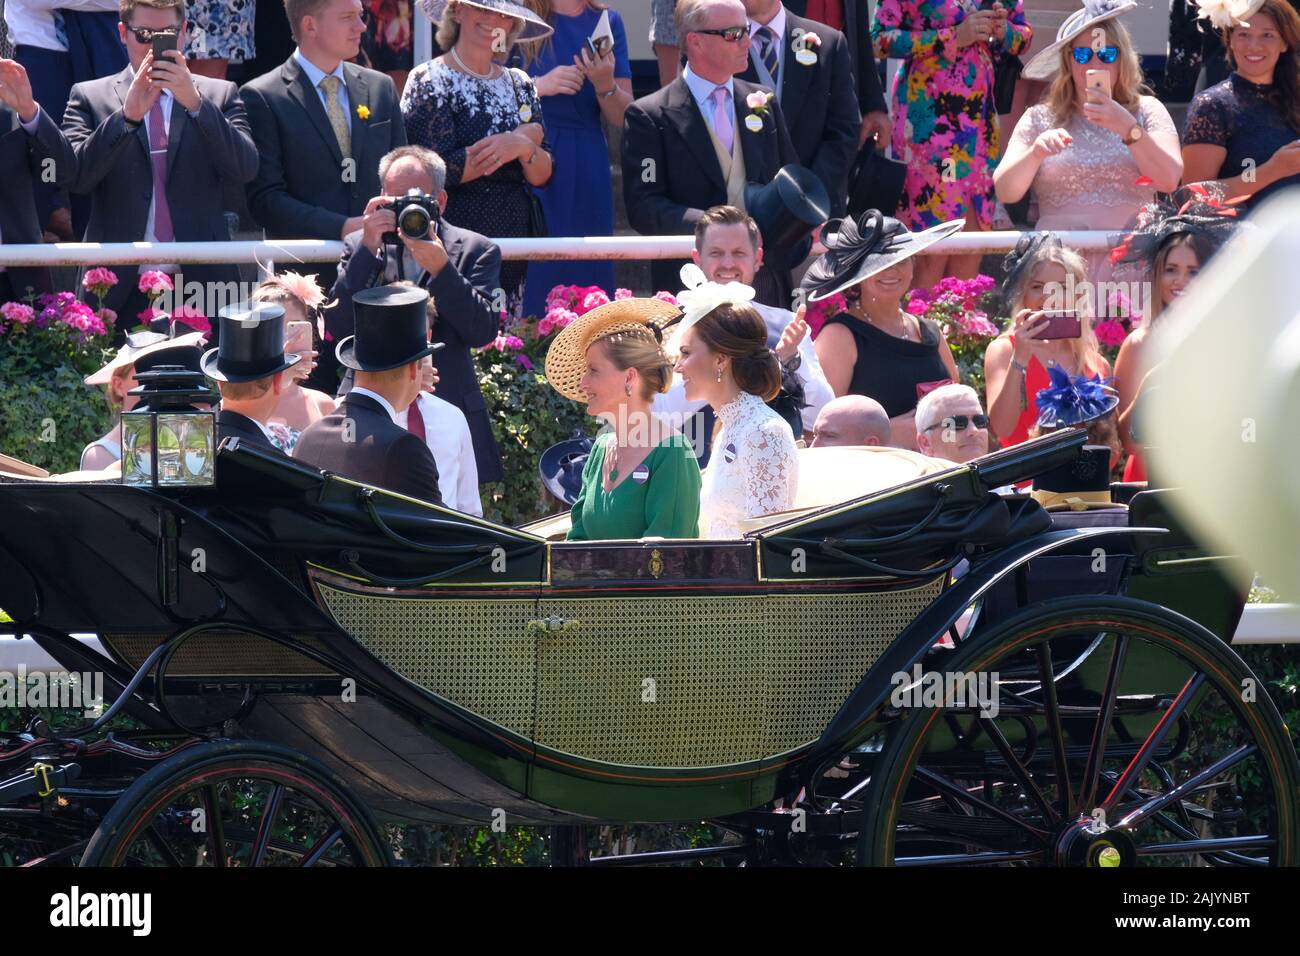 Images historiques de Kate Middleton, la duchesse de Cambridge à Royal Ascot, Royaume-Uni Banque D'Images